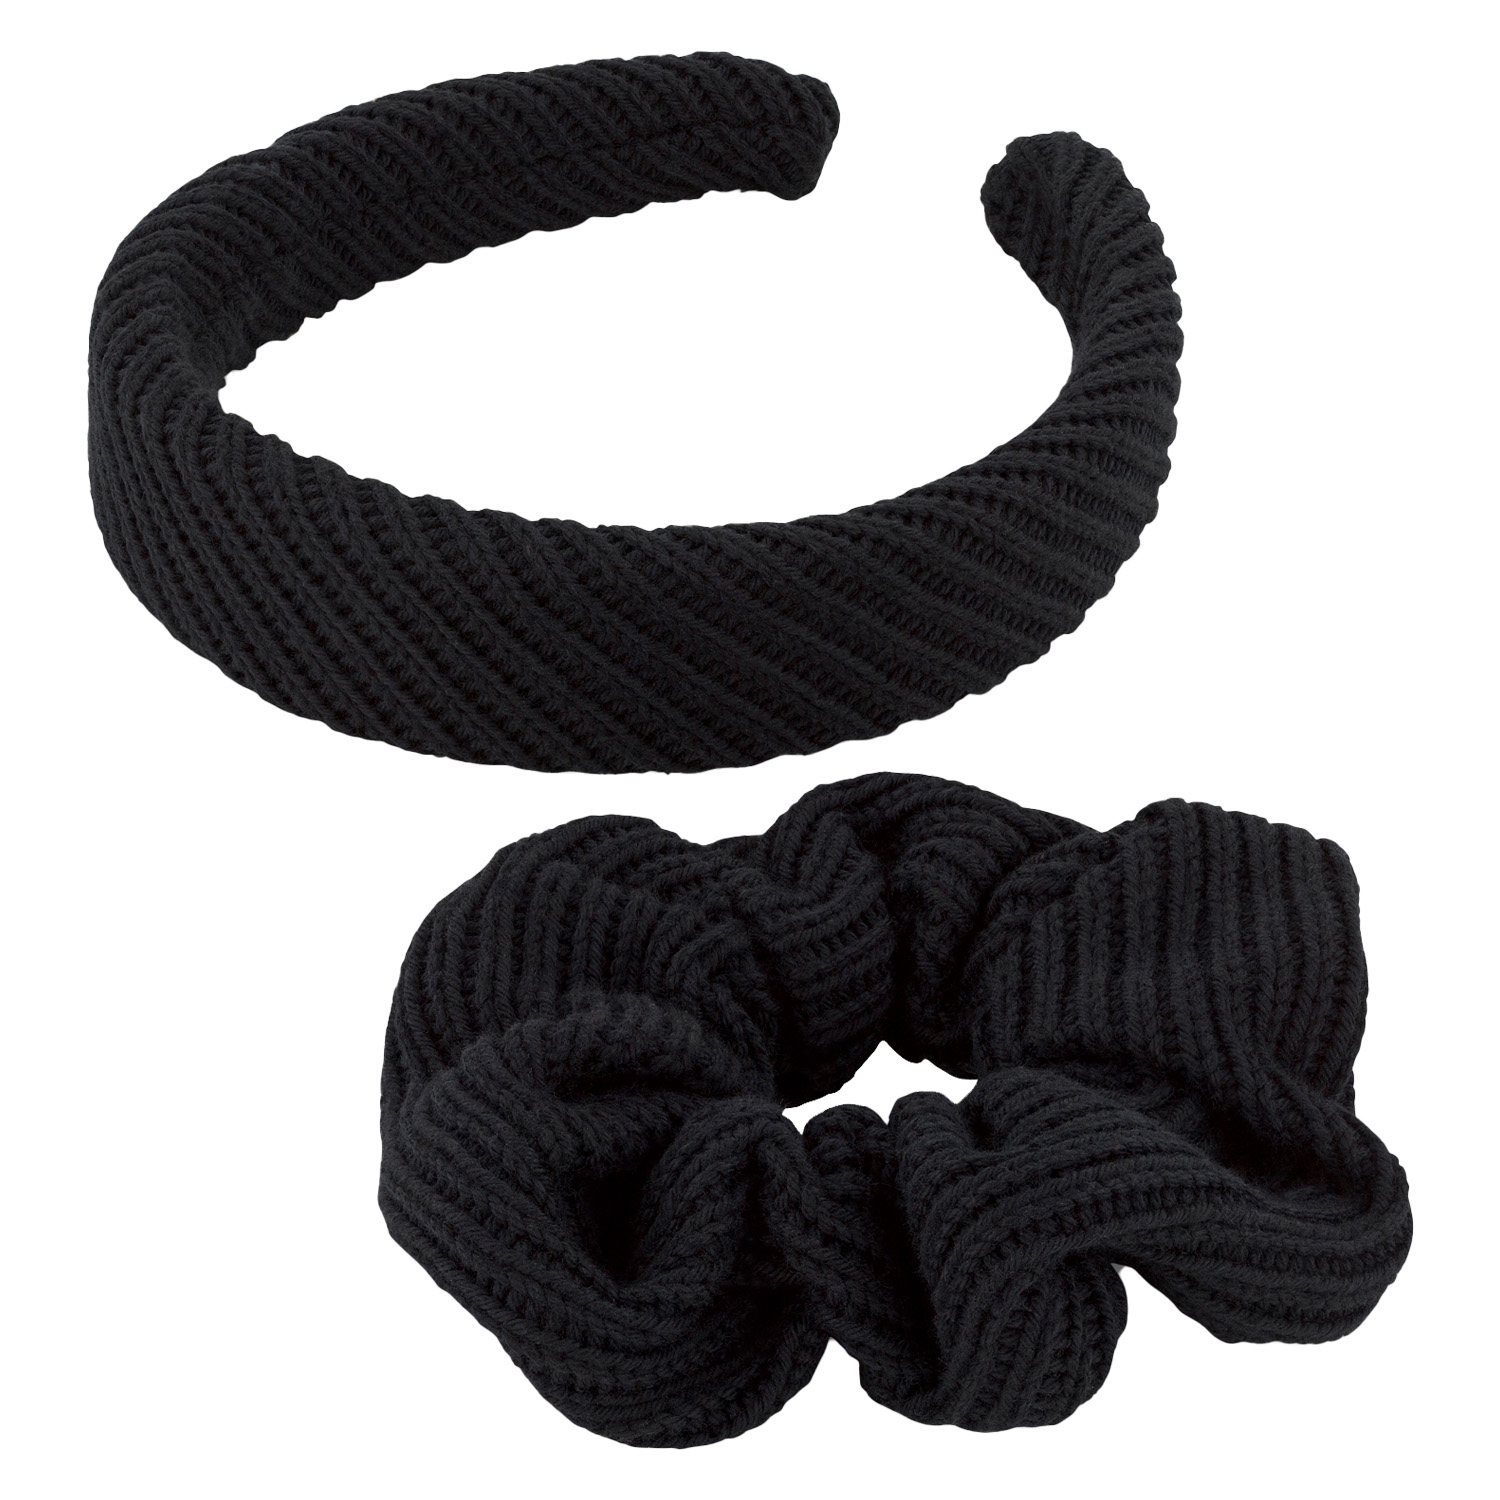 Produktbild von TRISA Hair - Knitted Hairband & Scrunchie, black